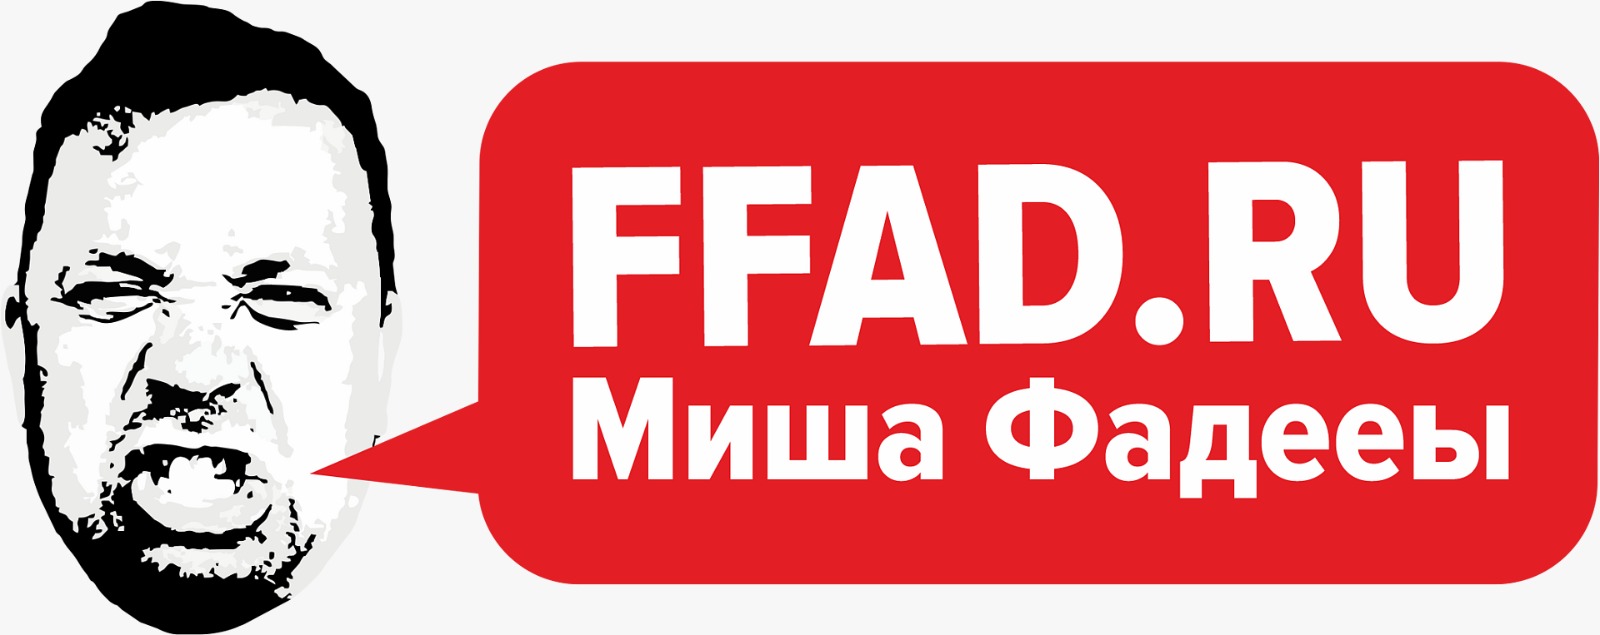 Рекламно-информационное агентство полного цикла Миши Фадееы